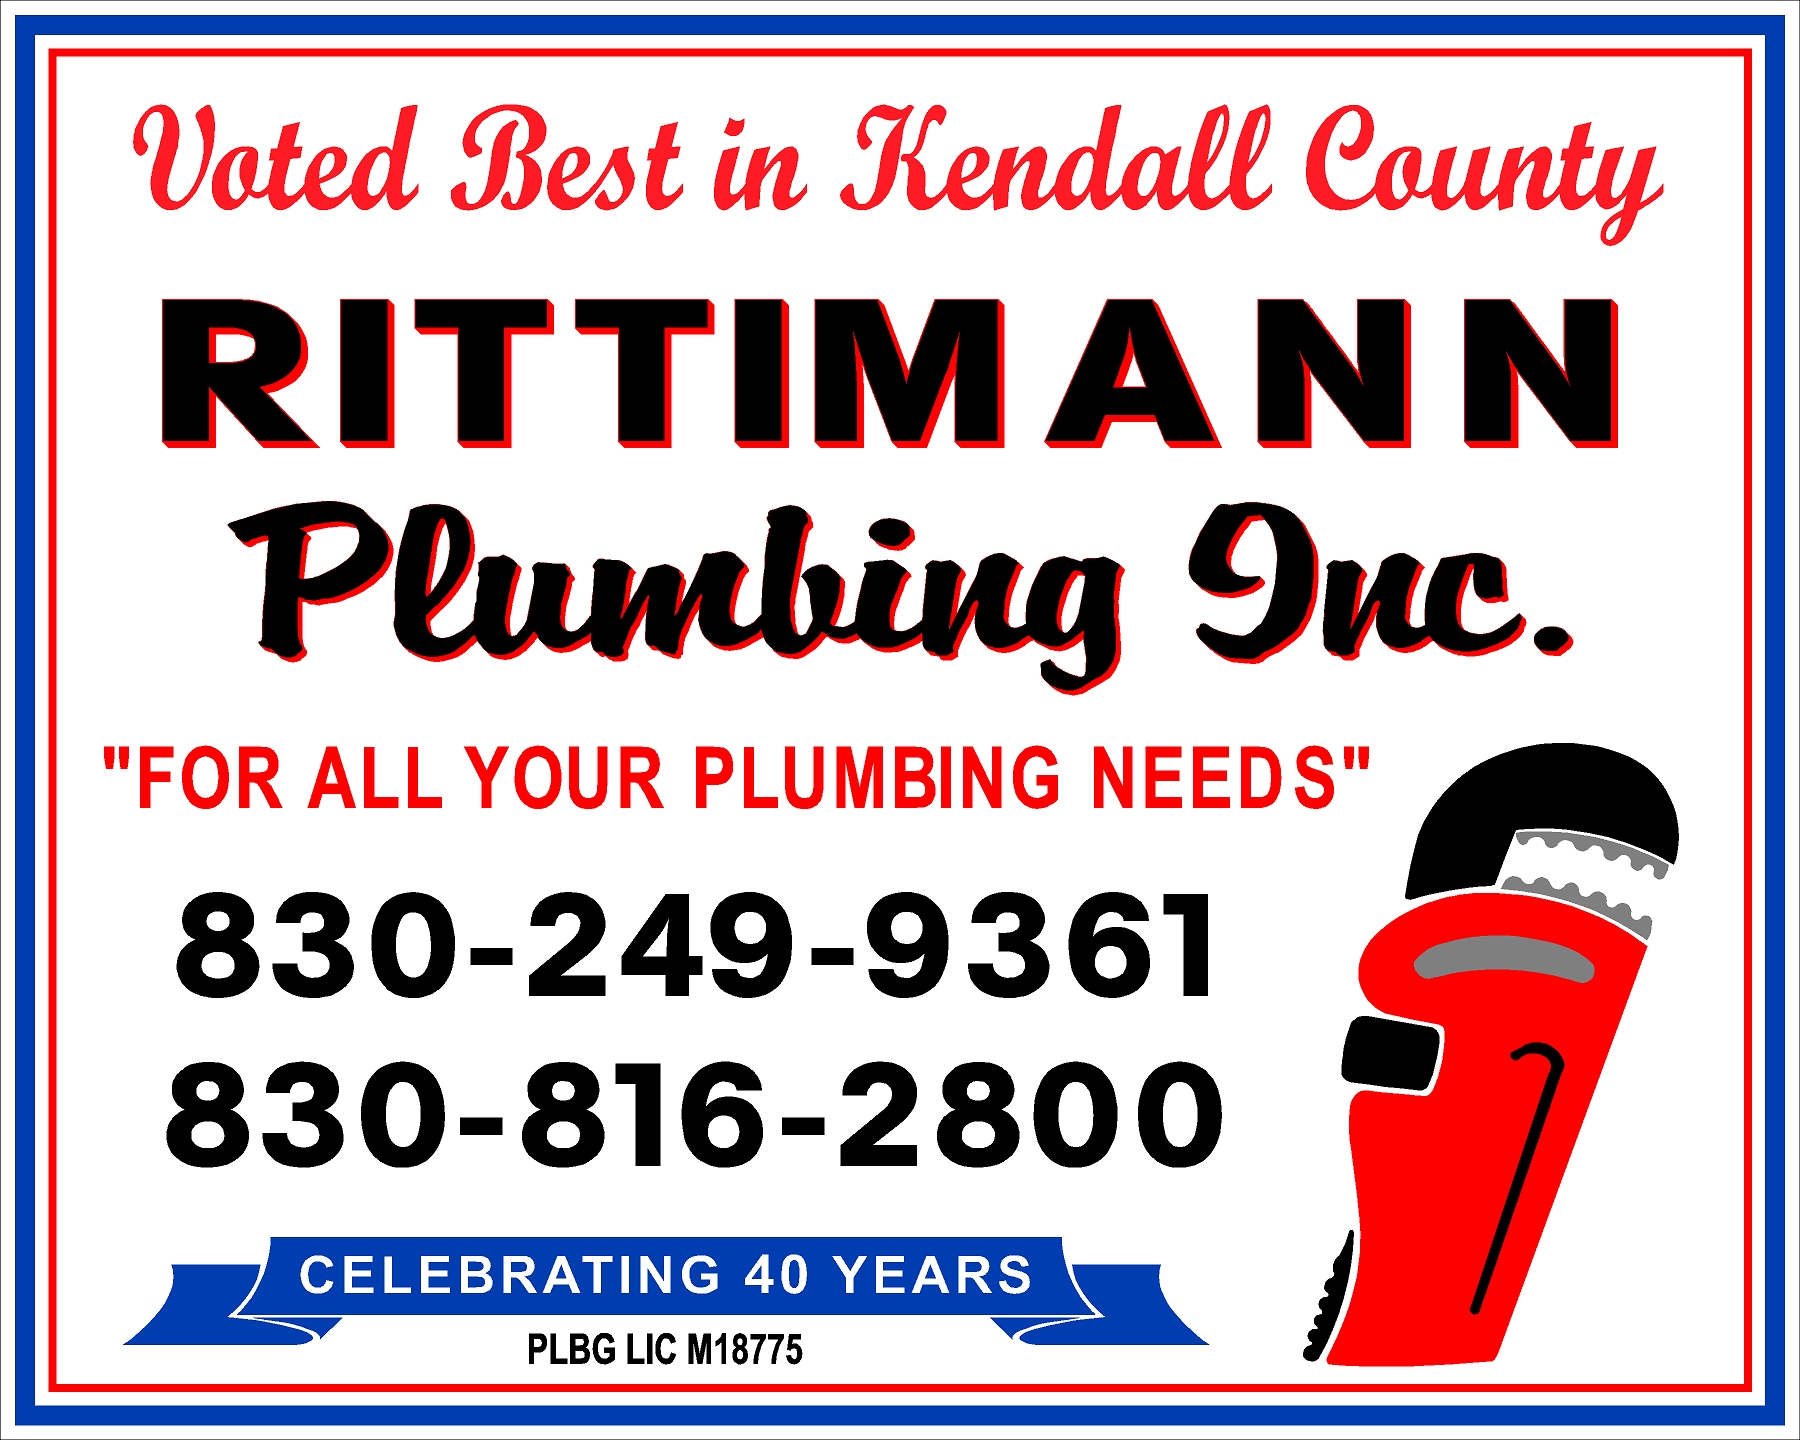 Rittiman Plumbing, Inc. Sponsorship